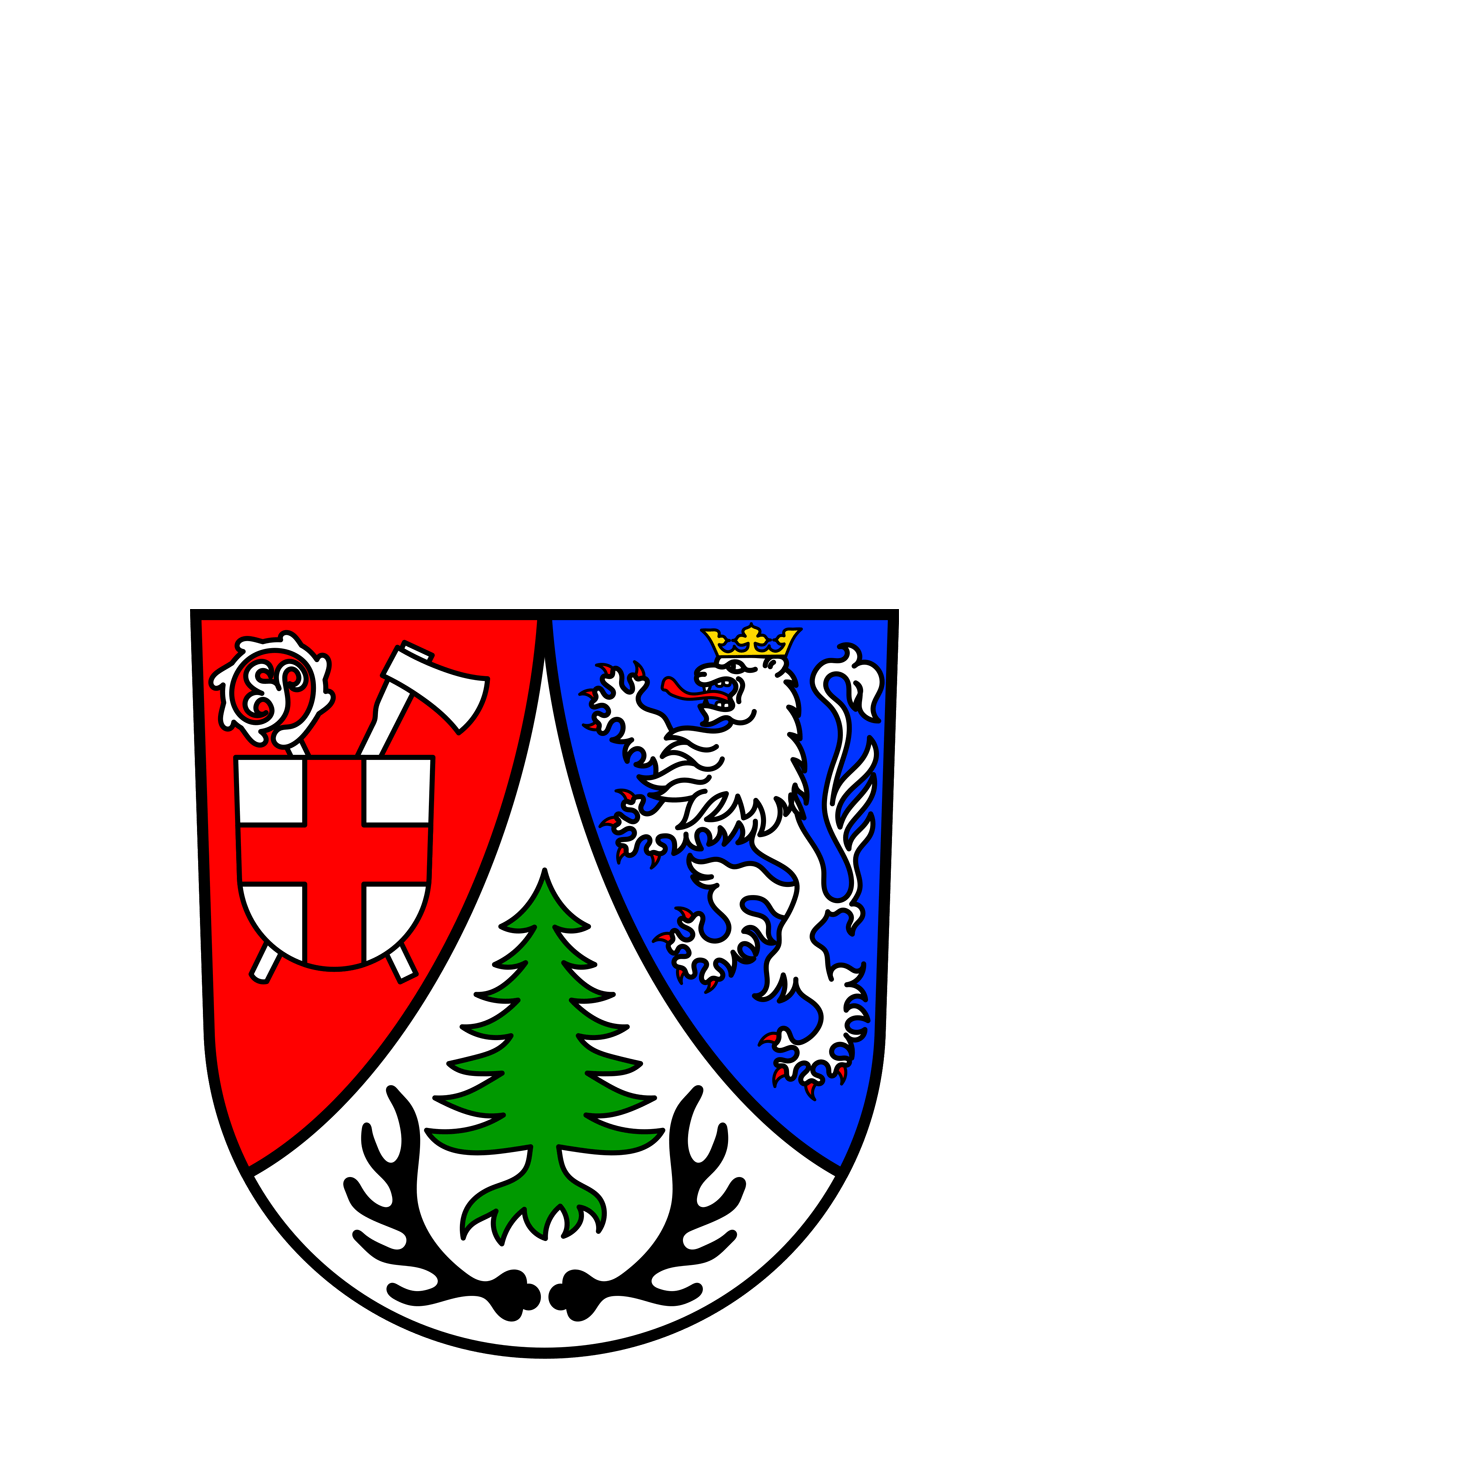 Wappen der Gemeinde Weiskirchen - © Gemeinde Weiskirchen